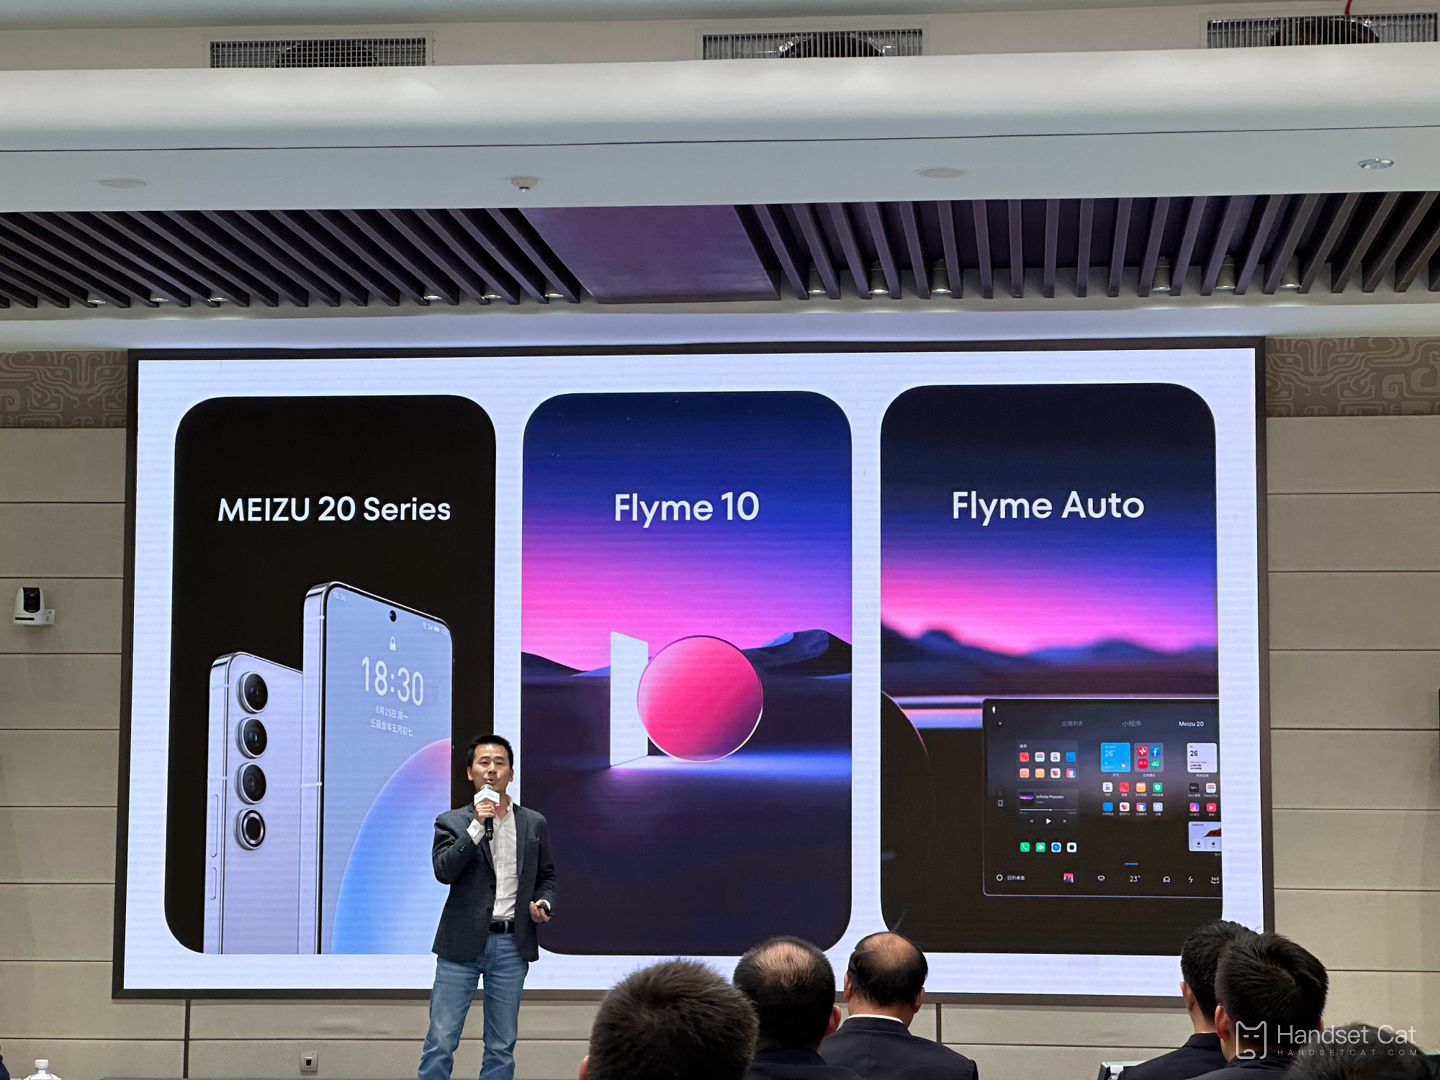 Meizu 20 시리즈 휴대폰은 새로운 Flyme 10 시스템과 함께 3월 30일에 출시될 것이라고 공식 발표되었습니다.